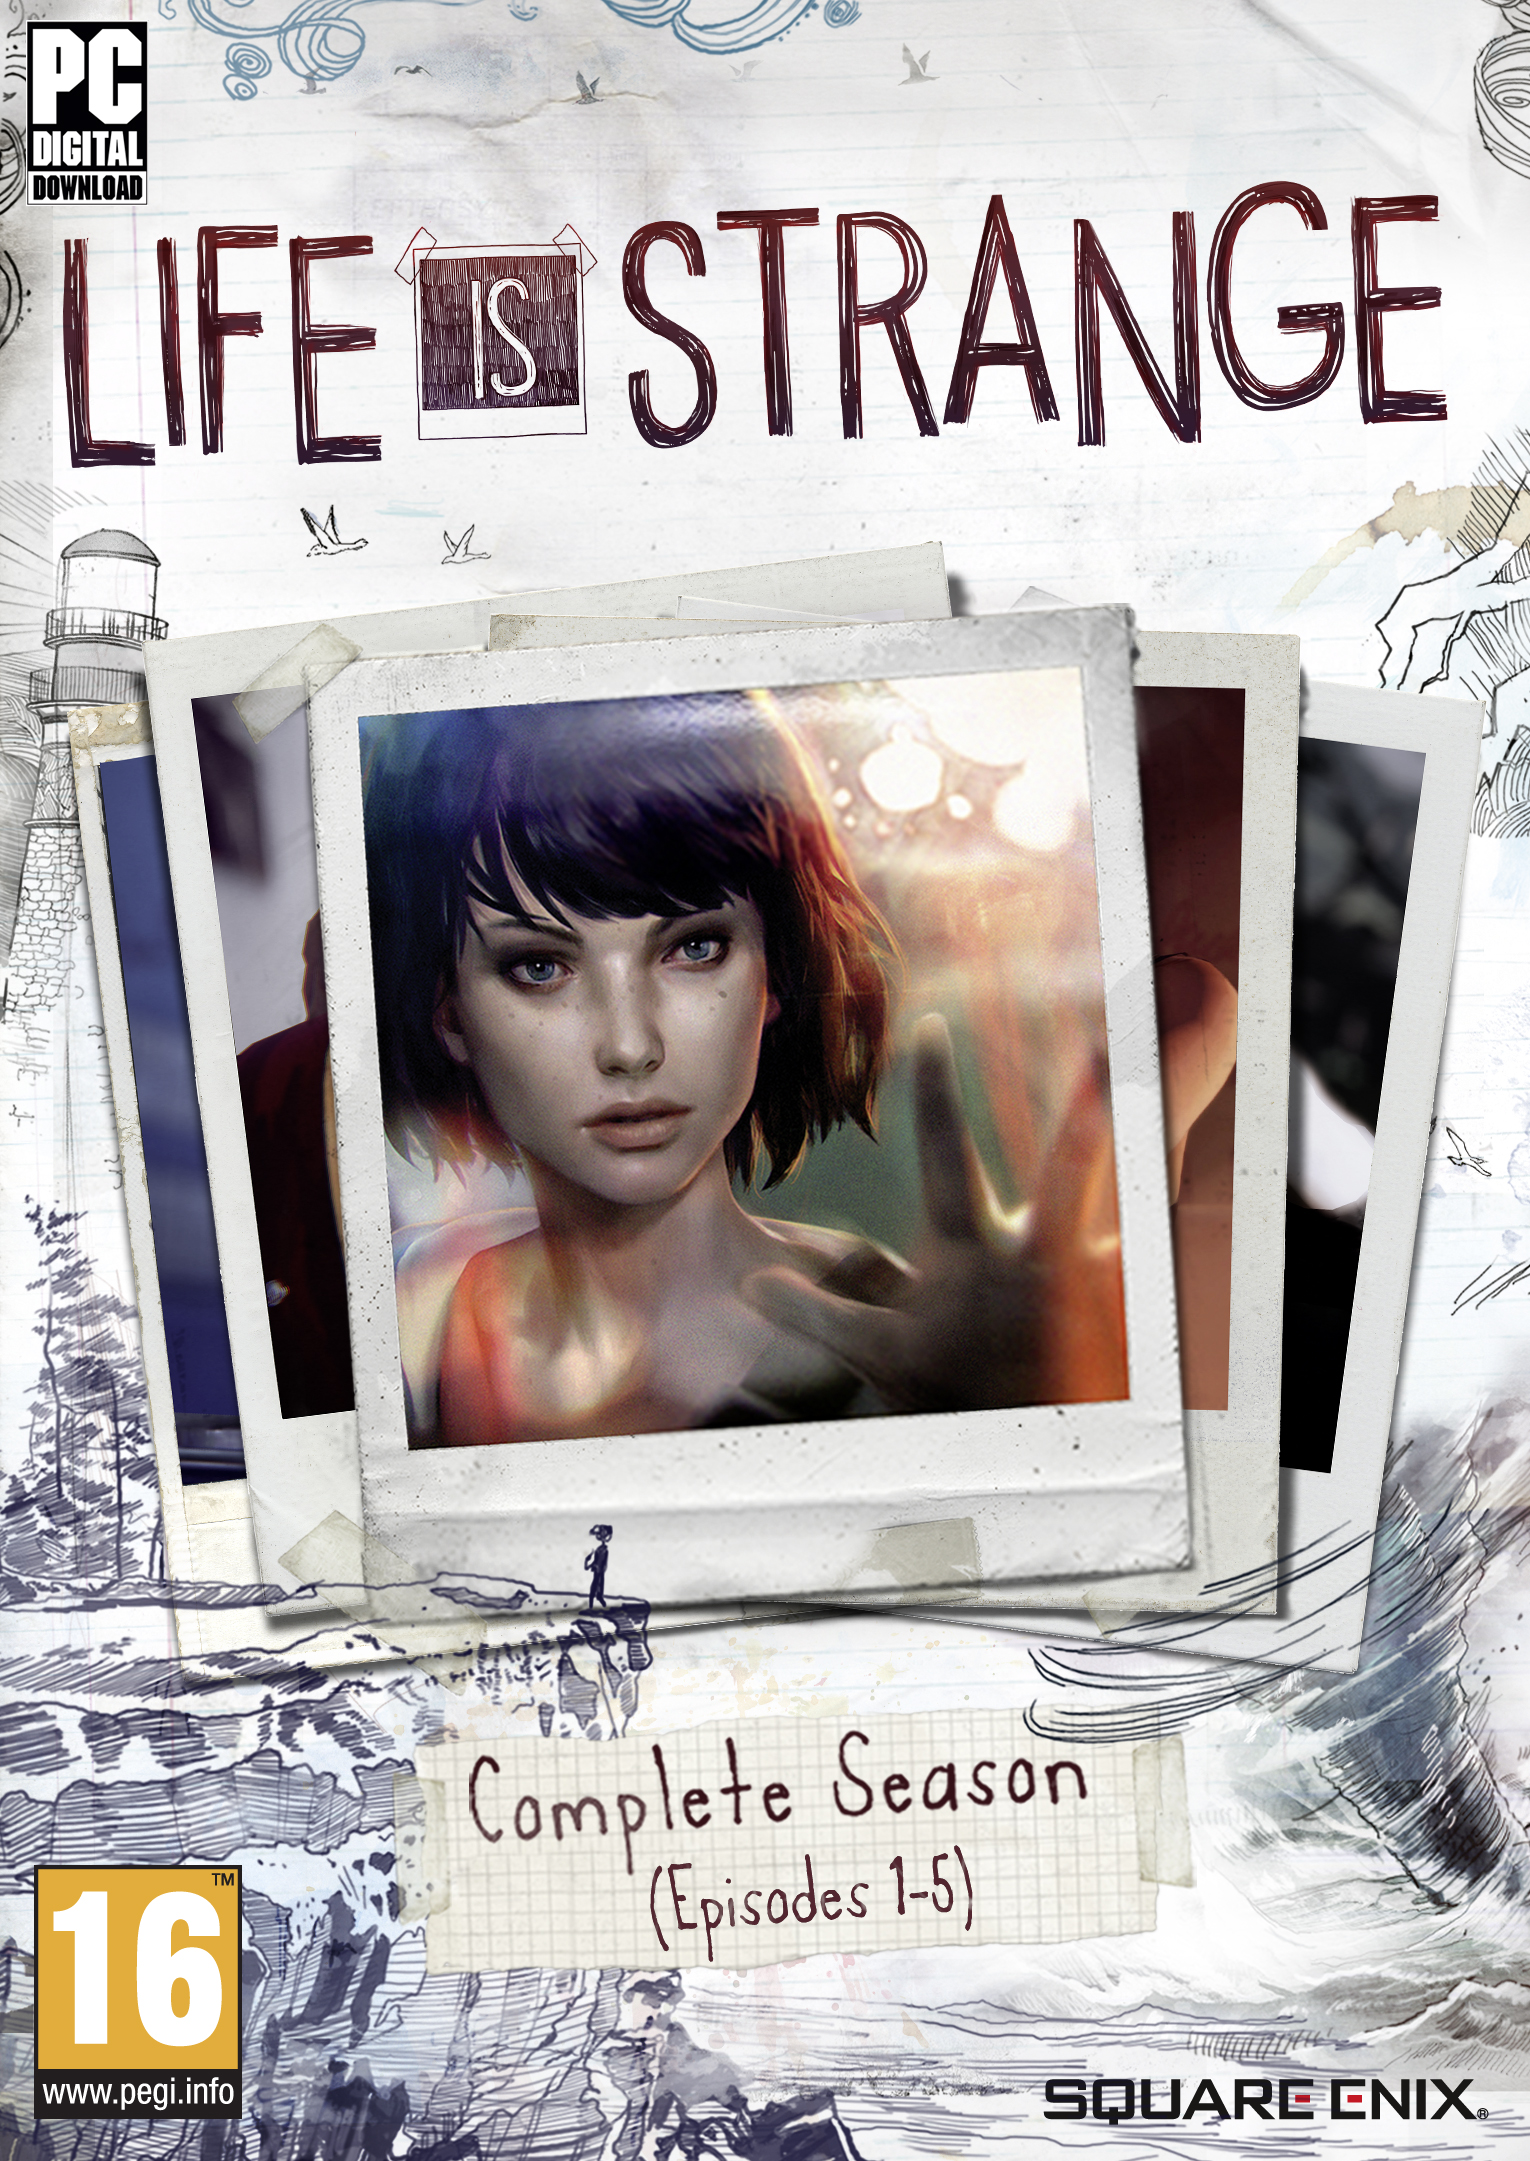 Capa do jogo "Life is Strange"